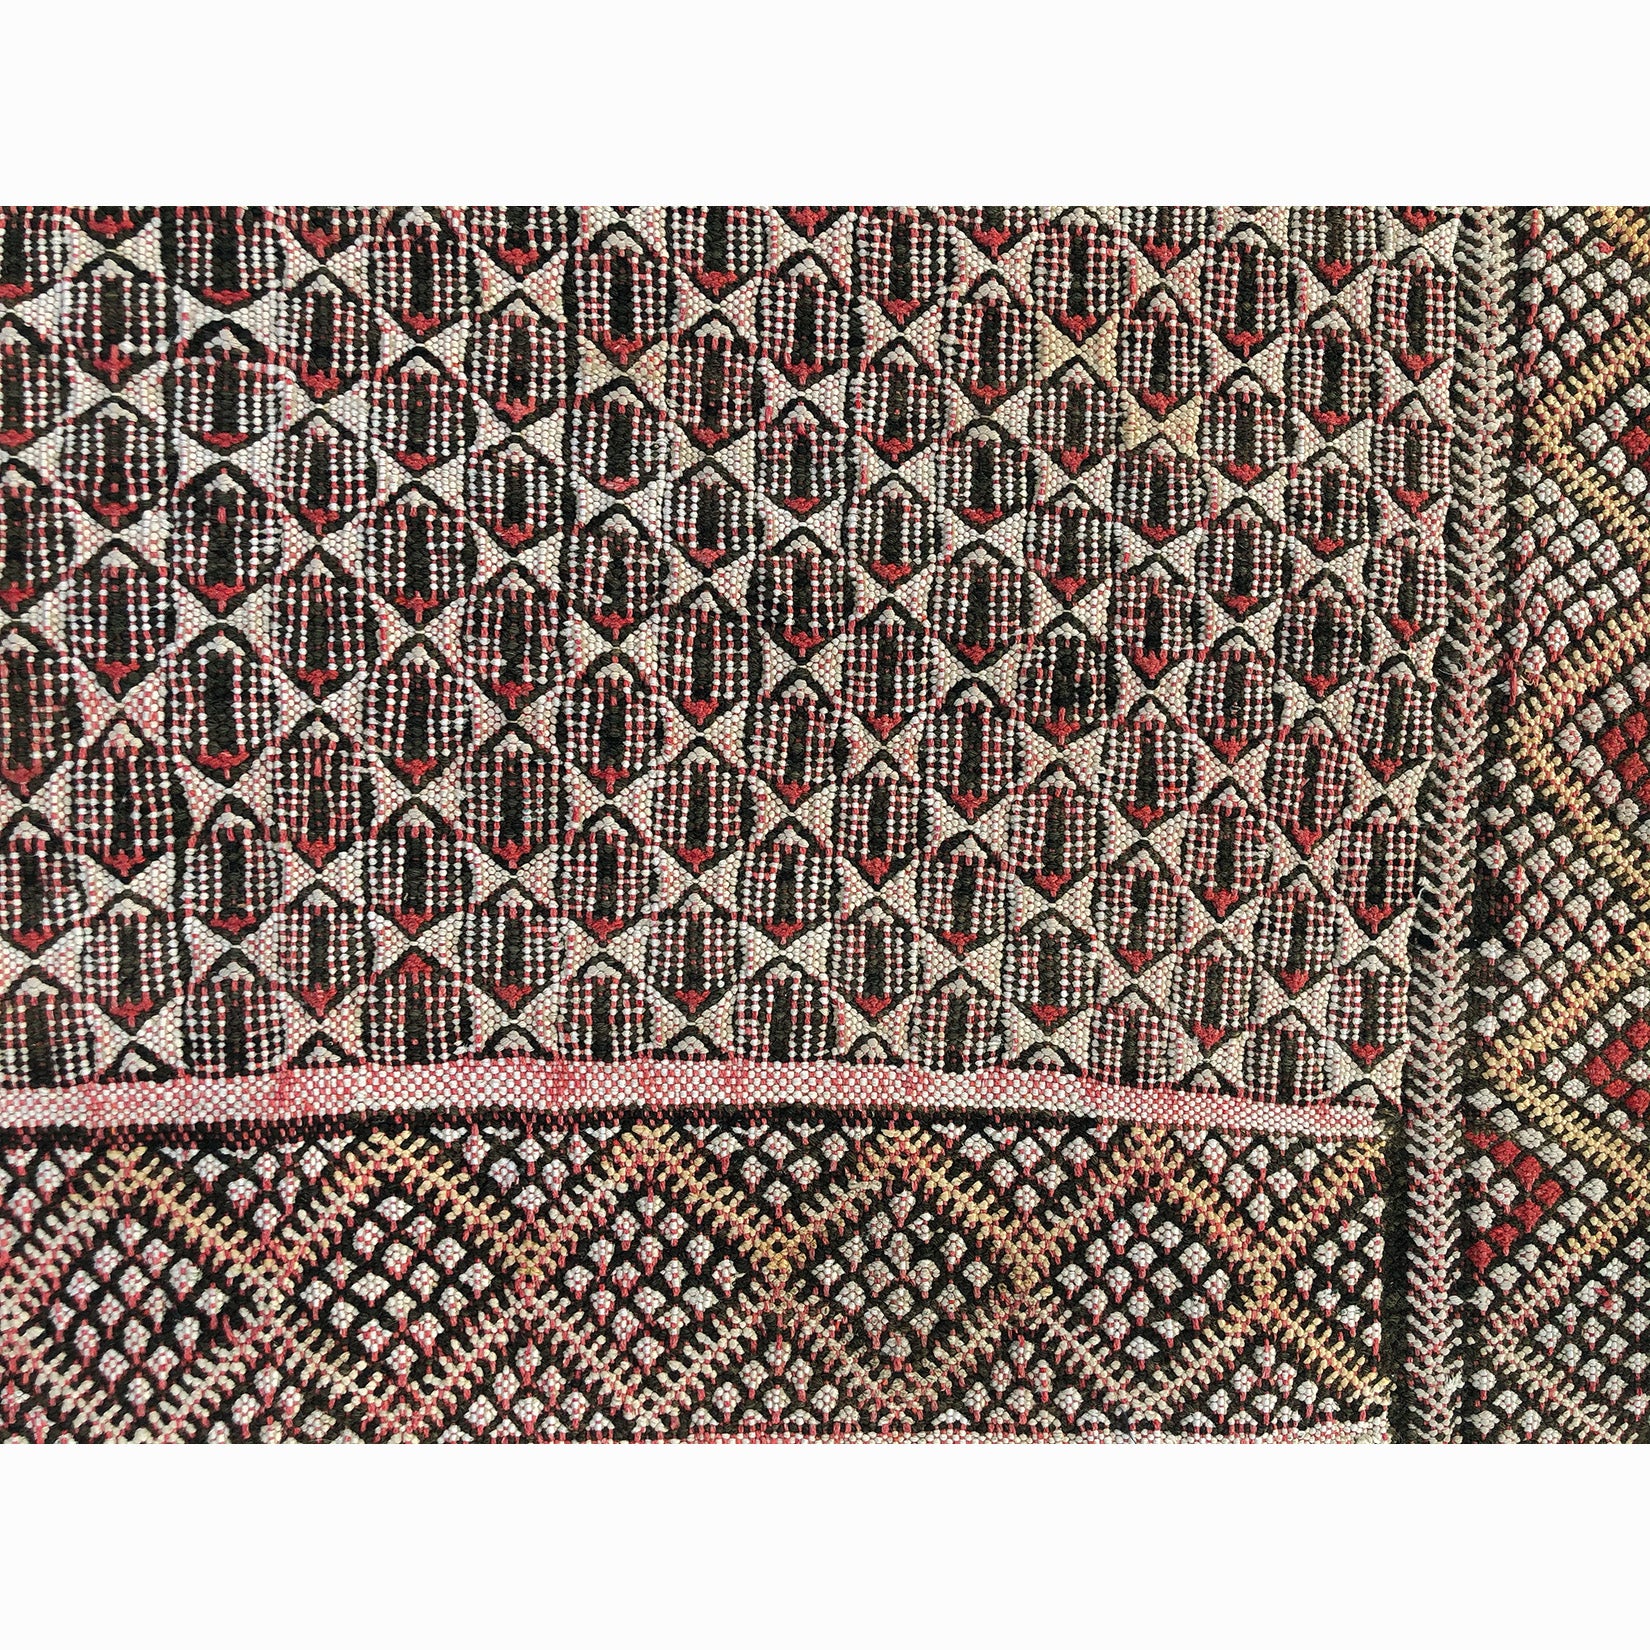 Authentic red tribal berber carpet - Kantara | Moroccan Rugs